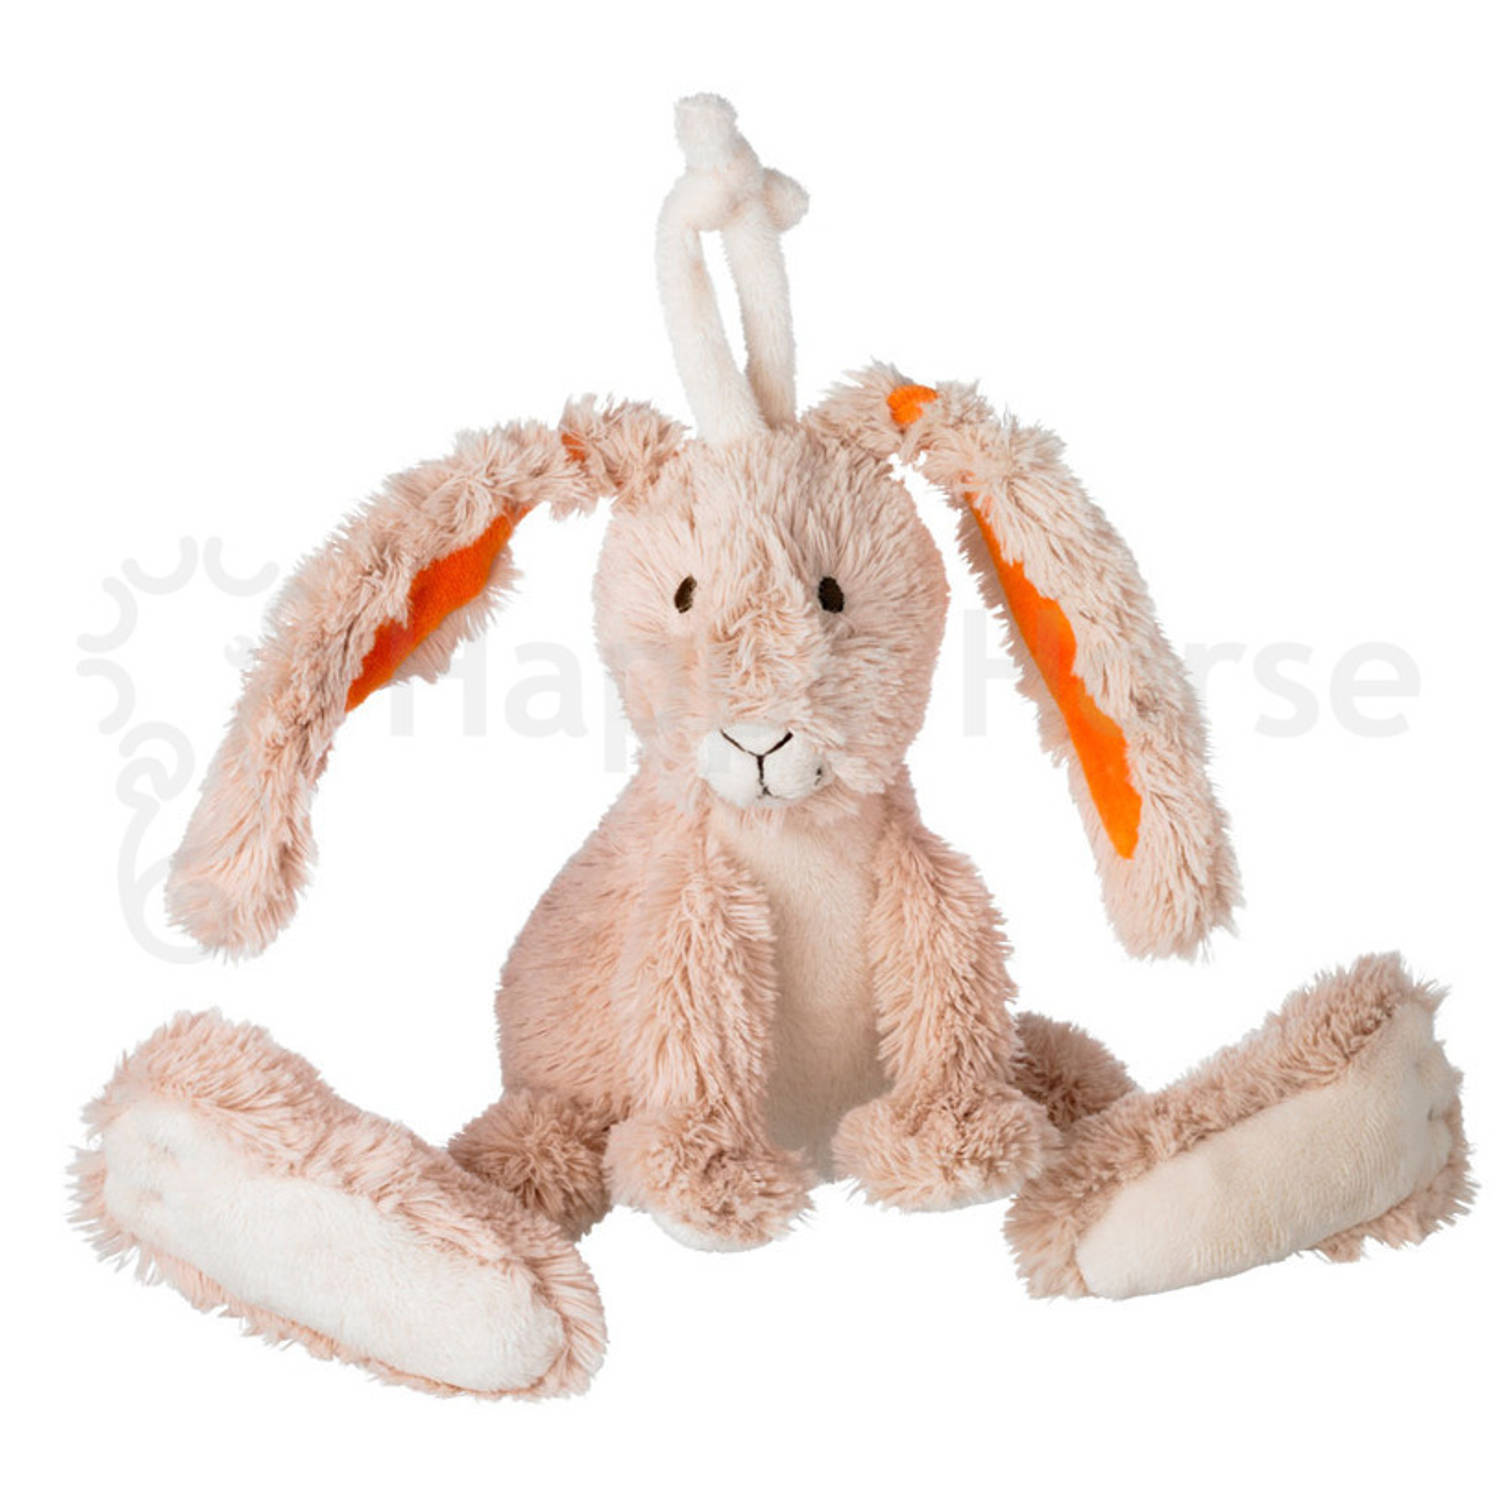 Twine het konijn pluche 31 cm